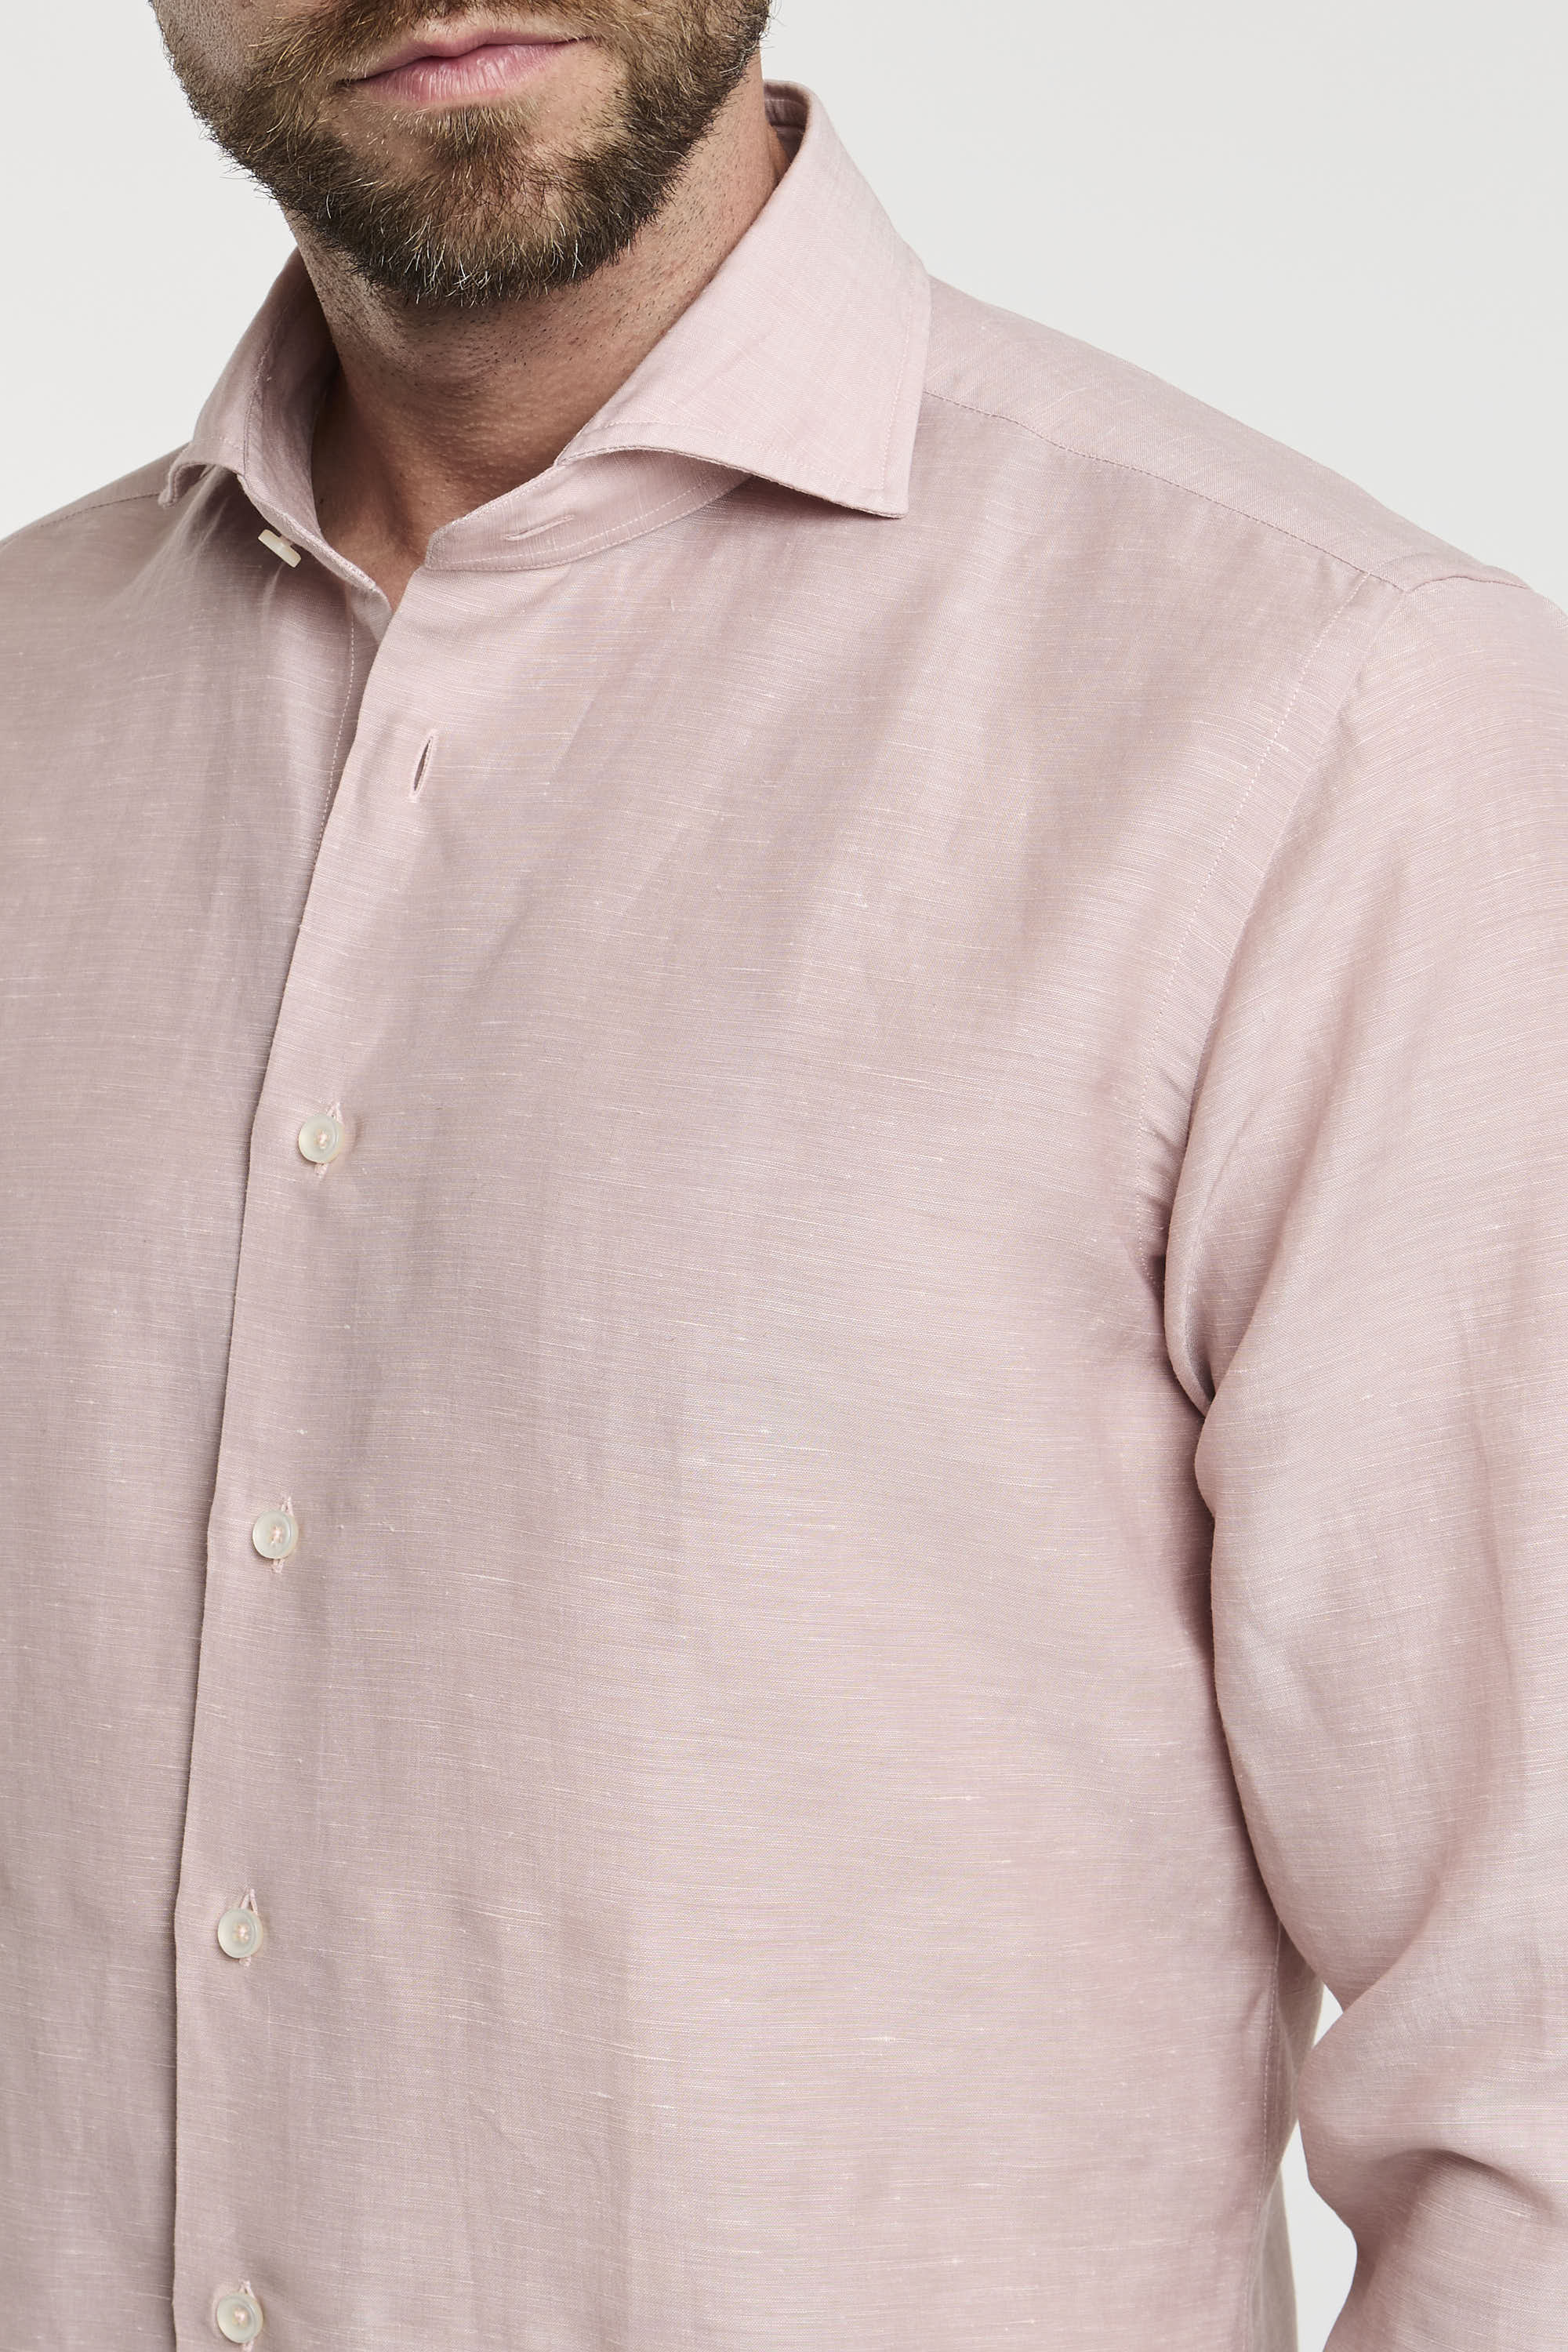 Xacus Wool and Linen Blend Pink Shirt-6